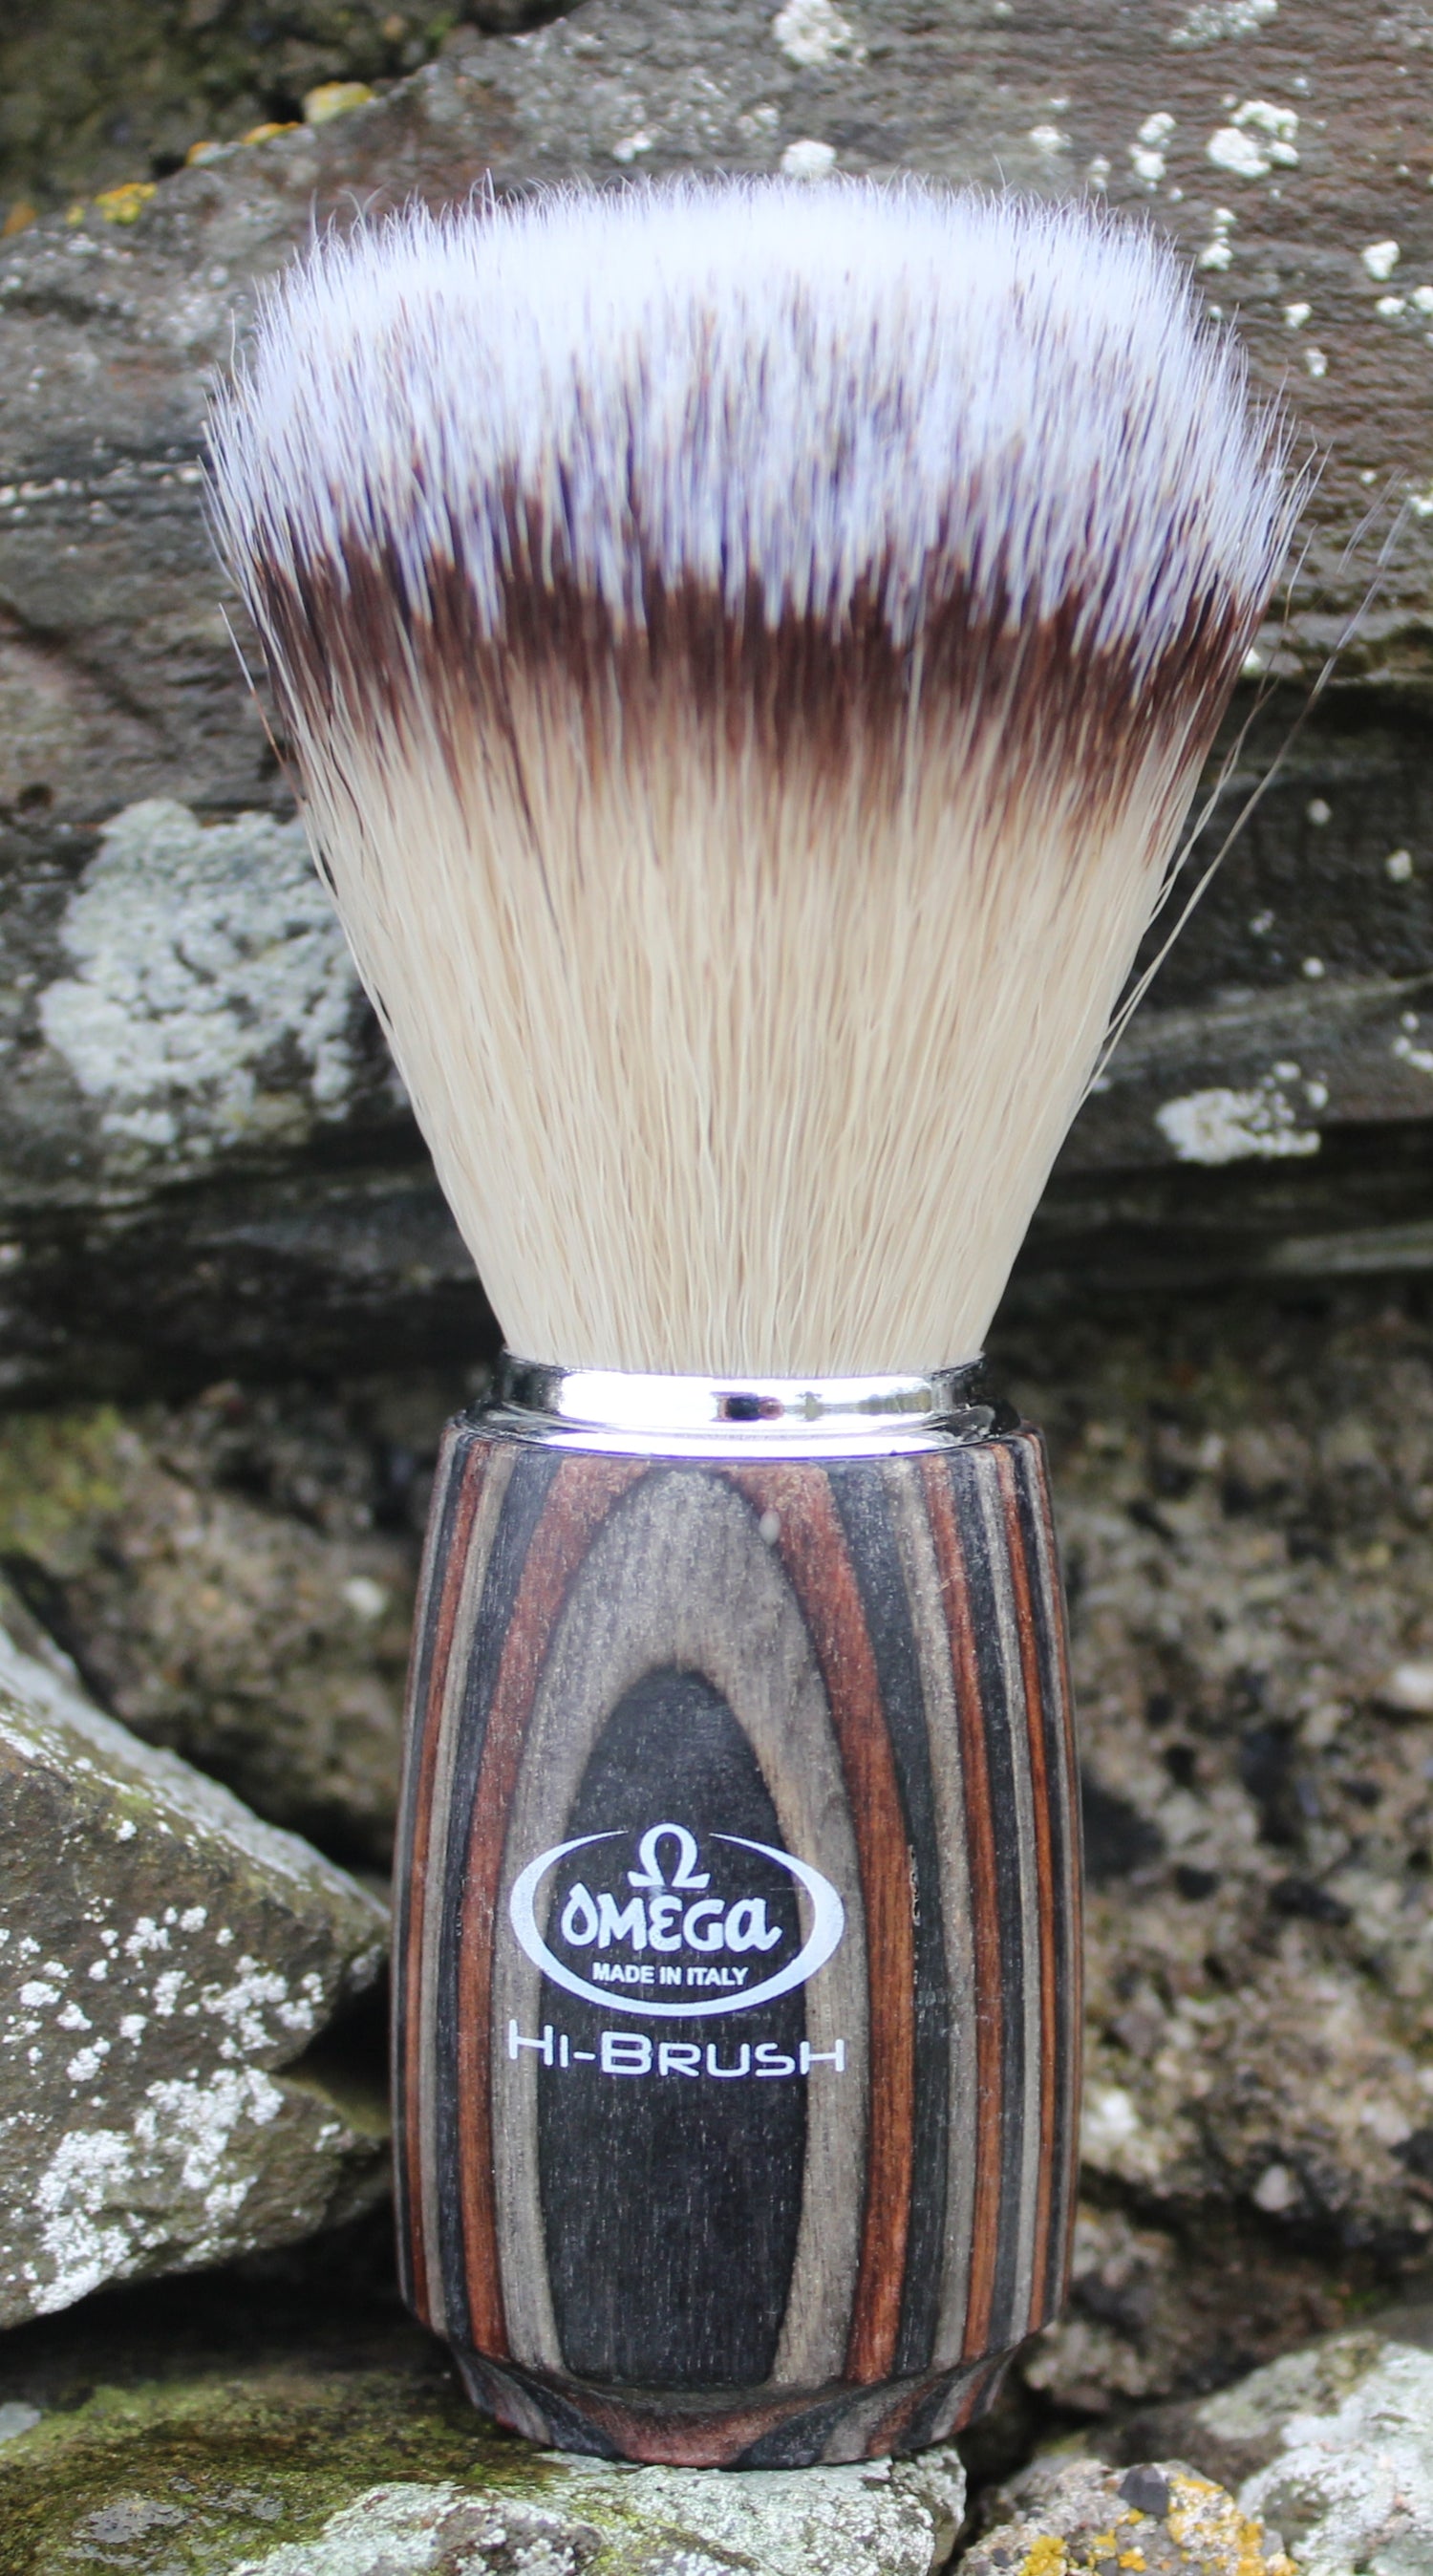 Synthetic imitation badger wood fusion shaving brush by Omega